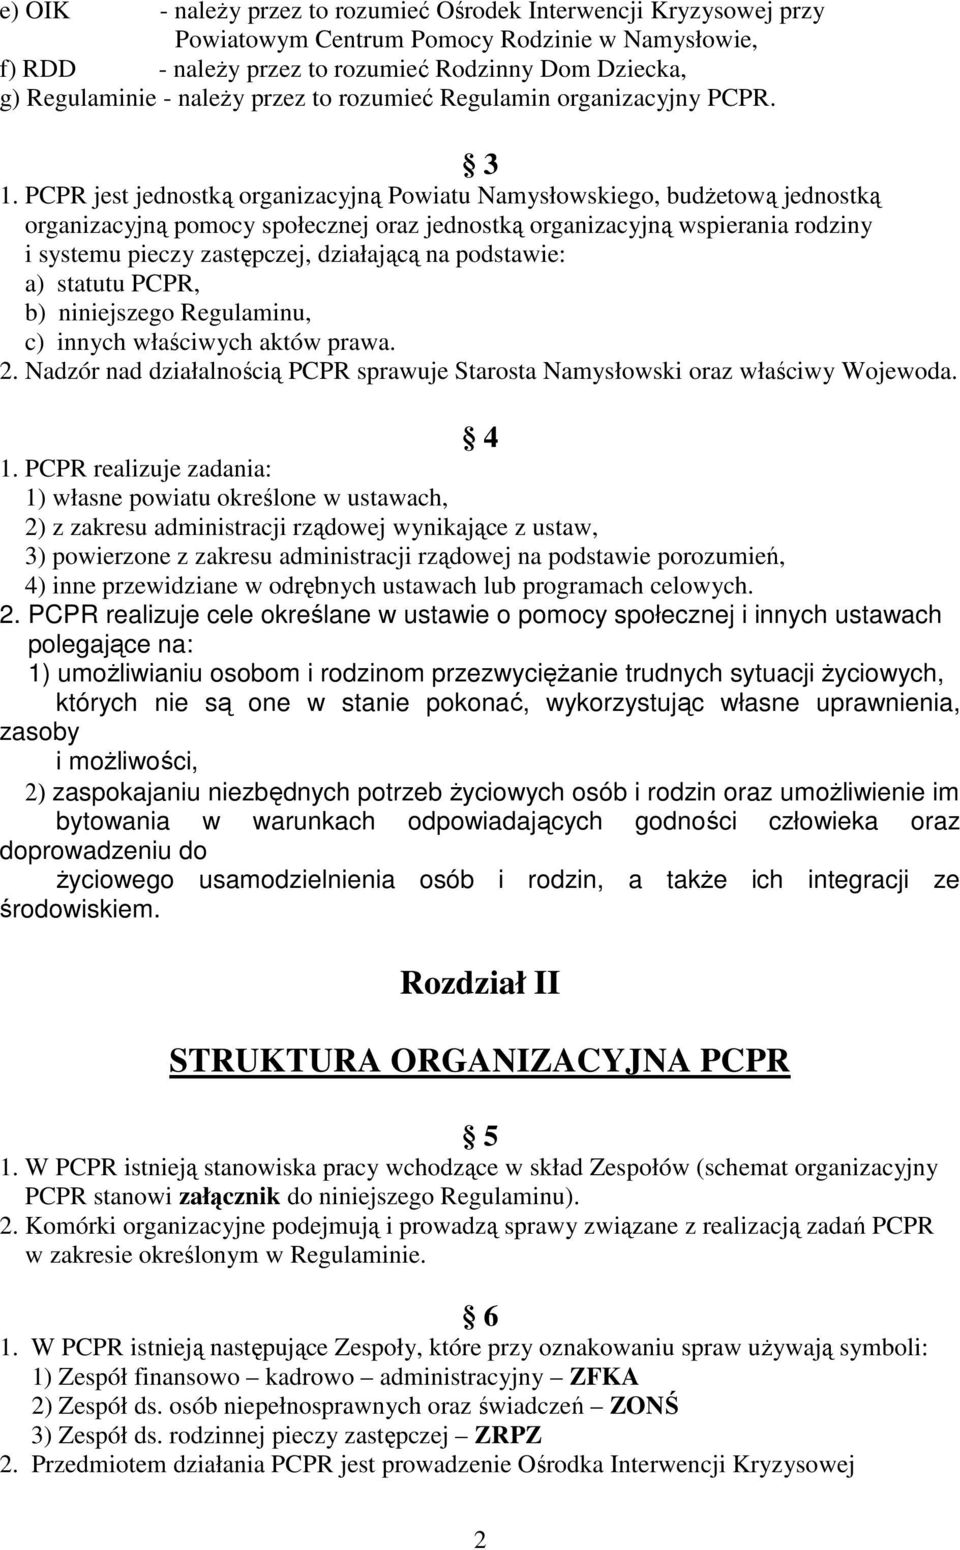 PCPR jest jednostką organizacyjną Powiatu Namysłowskiego, budŝetową jednostką organizacyjną pomocy społecznej oraz jednostką organizacyjną wspierania rodziny i systemu pieczy zastępczej, działającą